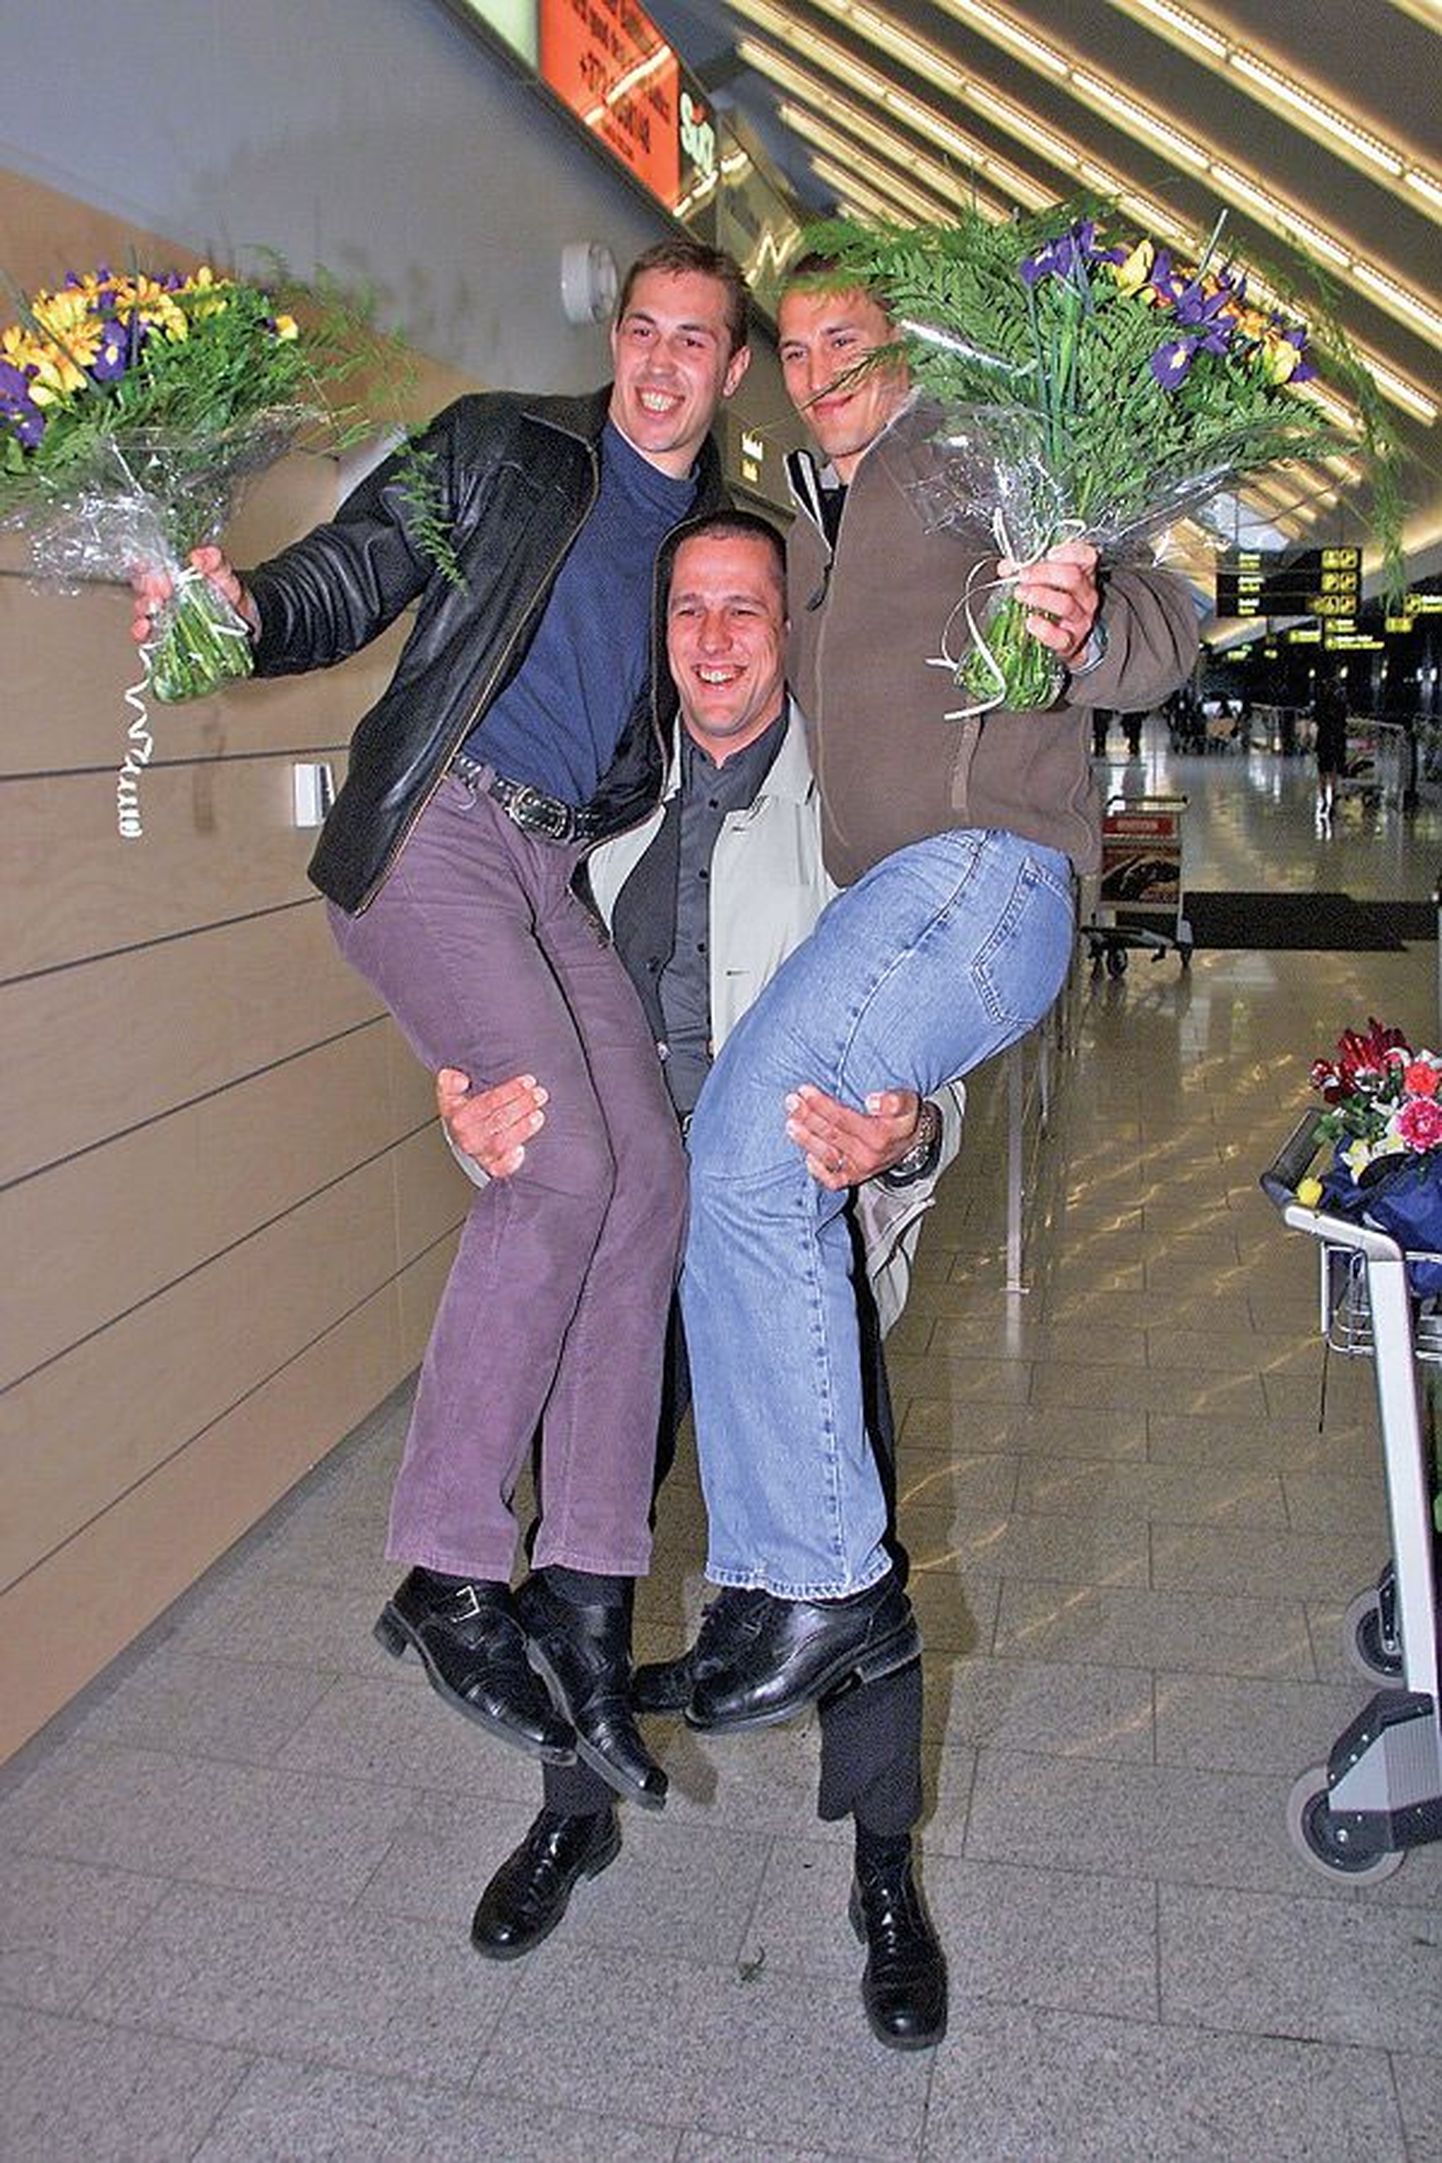 2001 год особенно удачен был для братьев Будылиных. Вернувшихся из Парижа с чемпионата Европы по дзюдо с золотой медалью Алексея Будылина (справа) и с бронзовой медалью Дмитрия (слева) держит на руках Индрек Пертельсон, встречавший их в аэропорту.